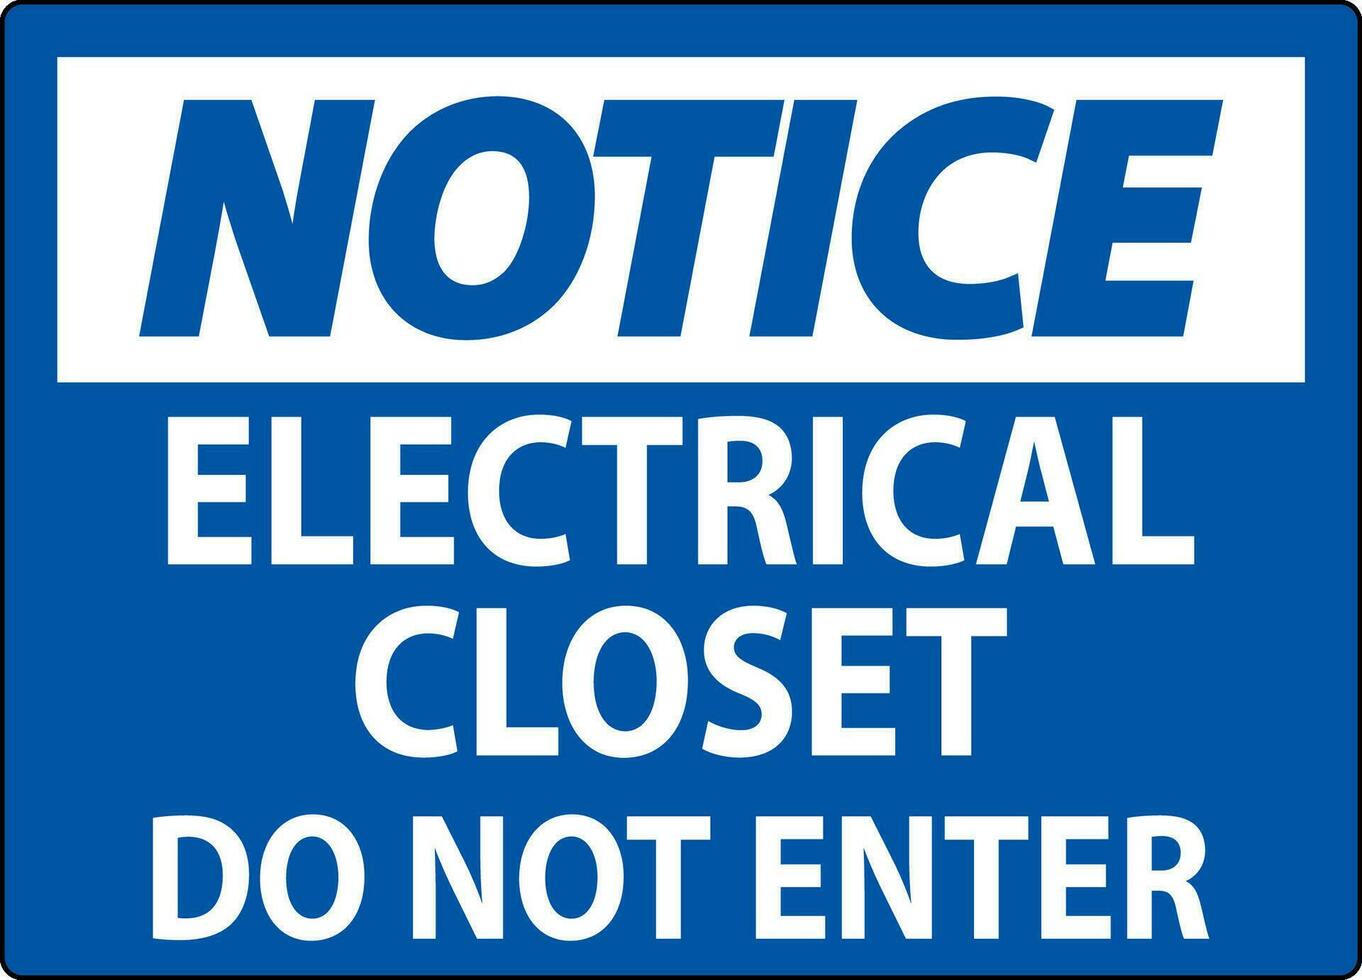 Notice Sign Electrical Closet - Do Not Enter vector